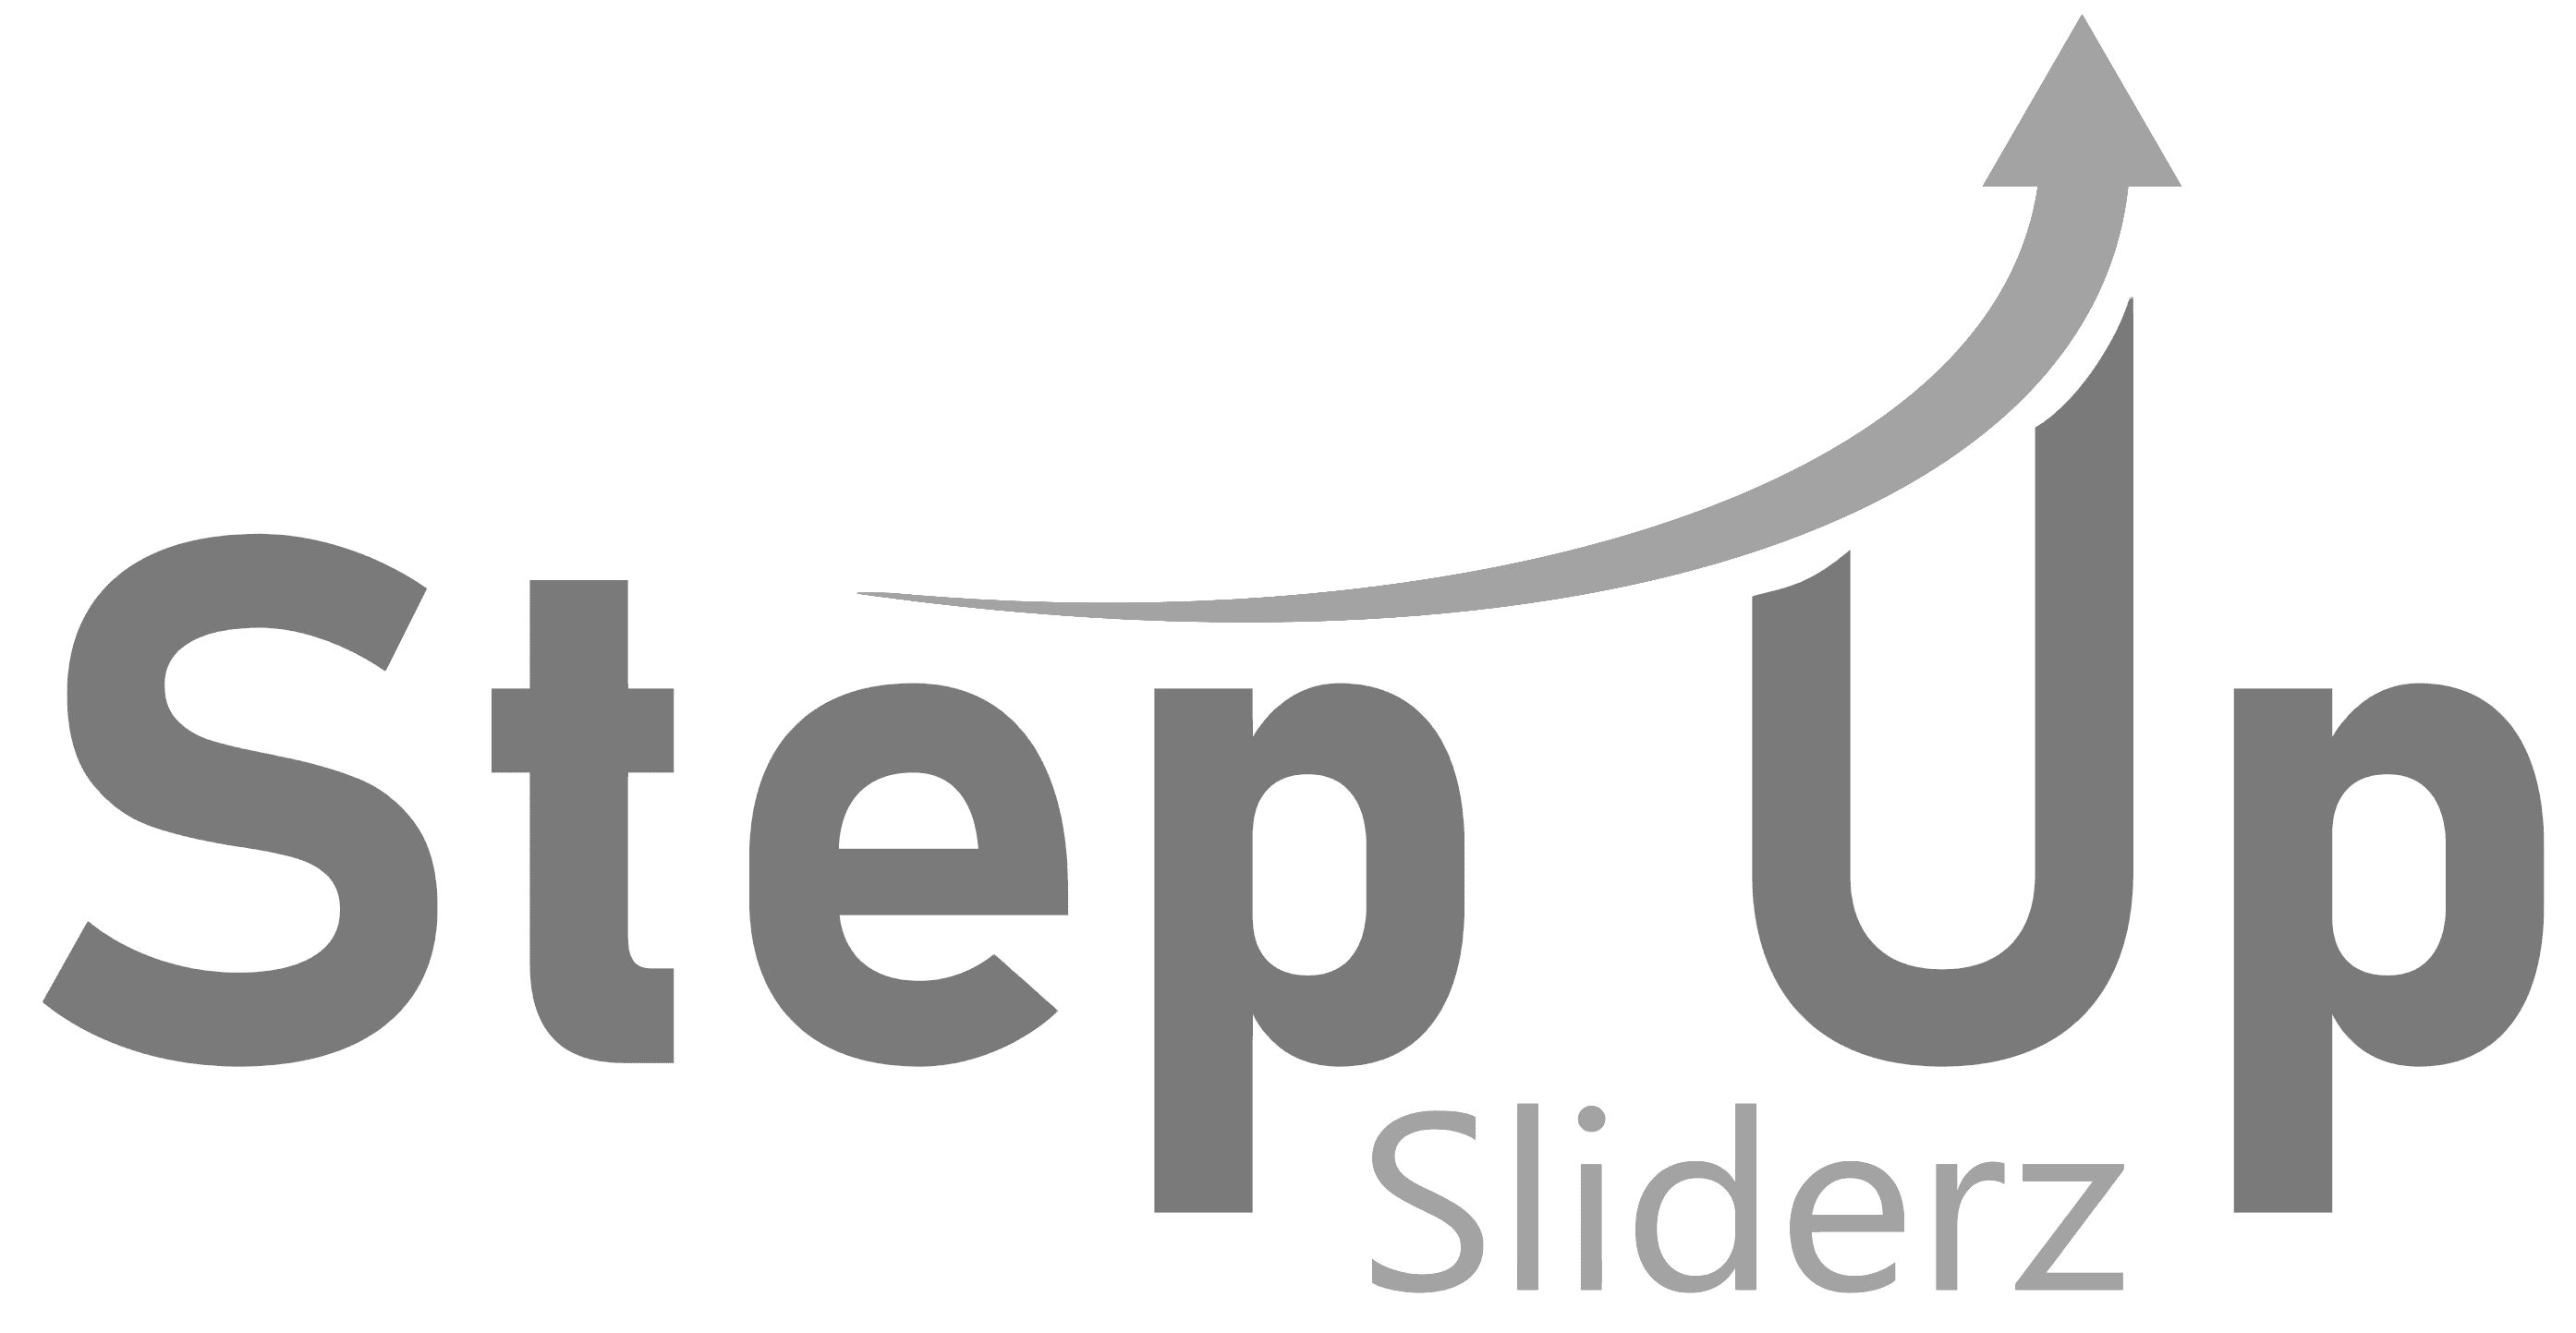 stepup sliderz customer logo